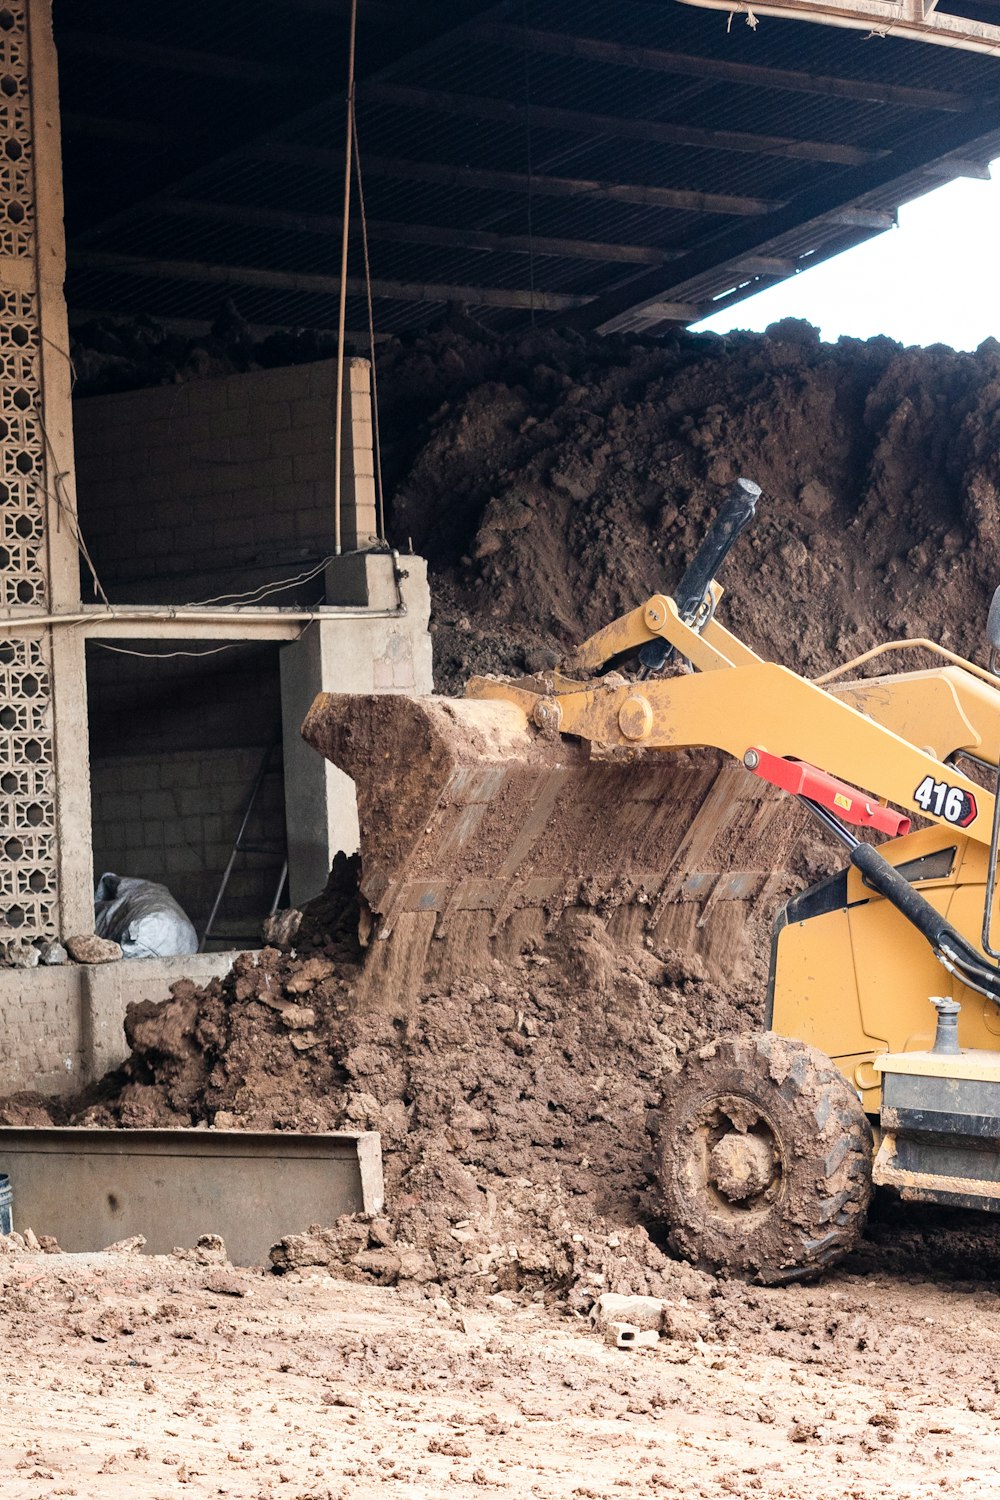 a bulldozer in a construction site